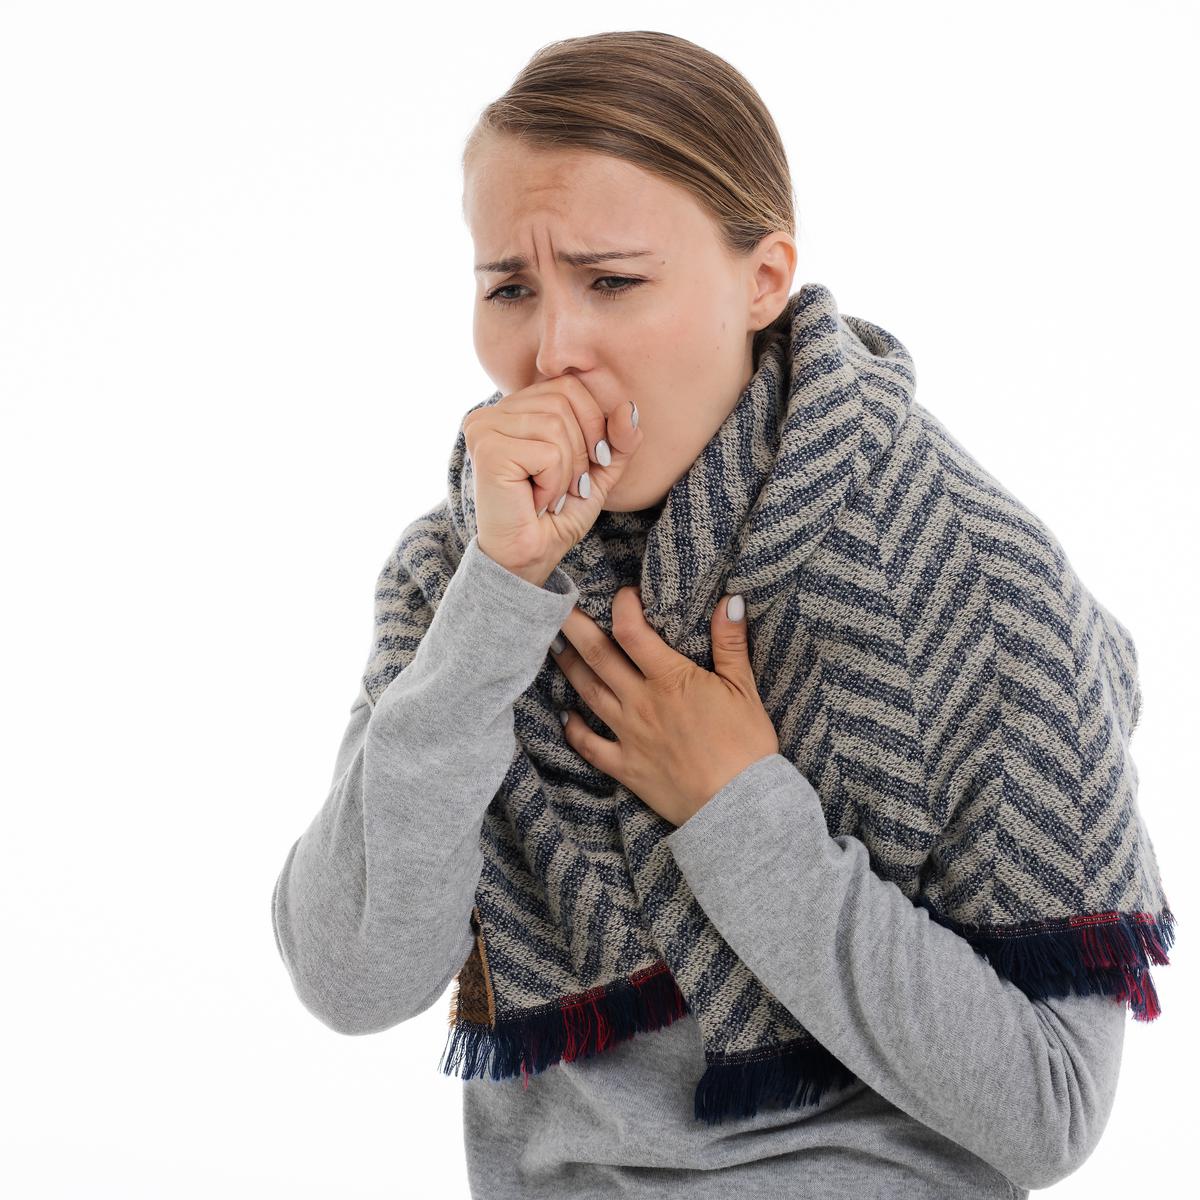 Bagaimana awal munculnya gejala sianosis pada penderita asma